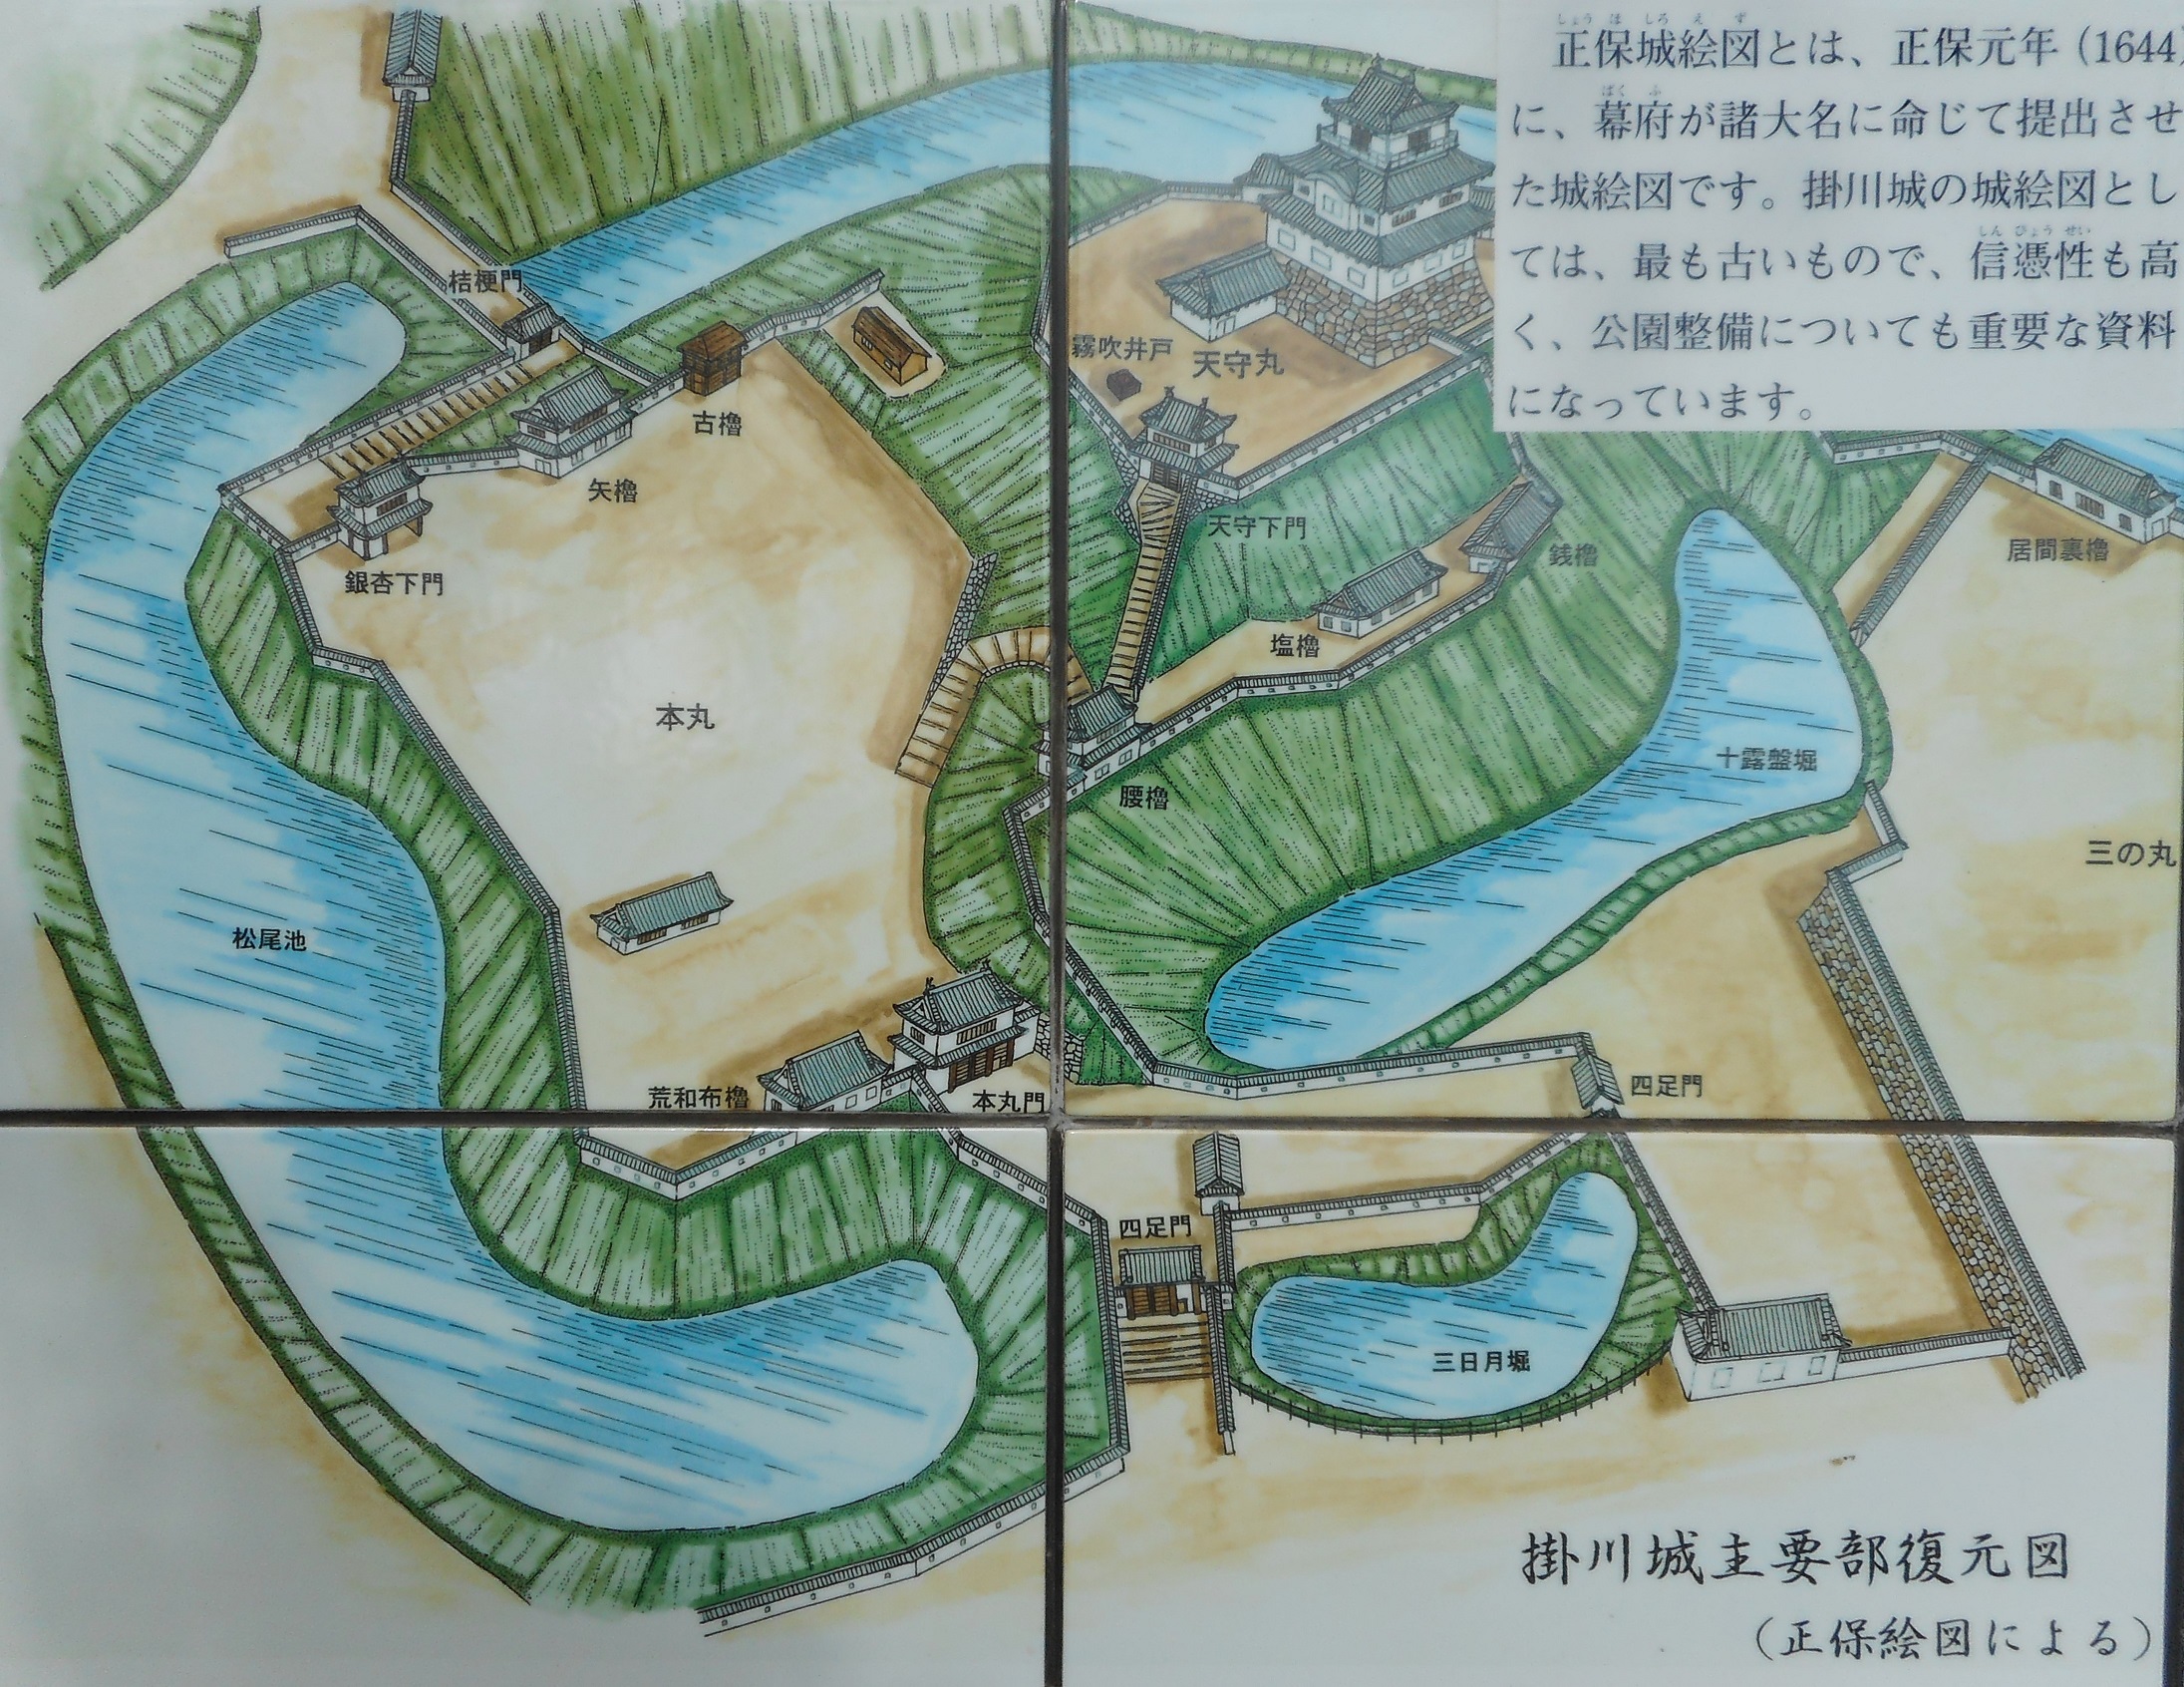 掛川城(遠江国)～その2 | パクス・ジャポニカ Vol.2 - 楽天ブログ